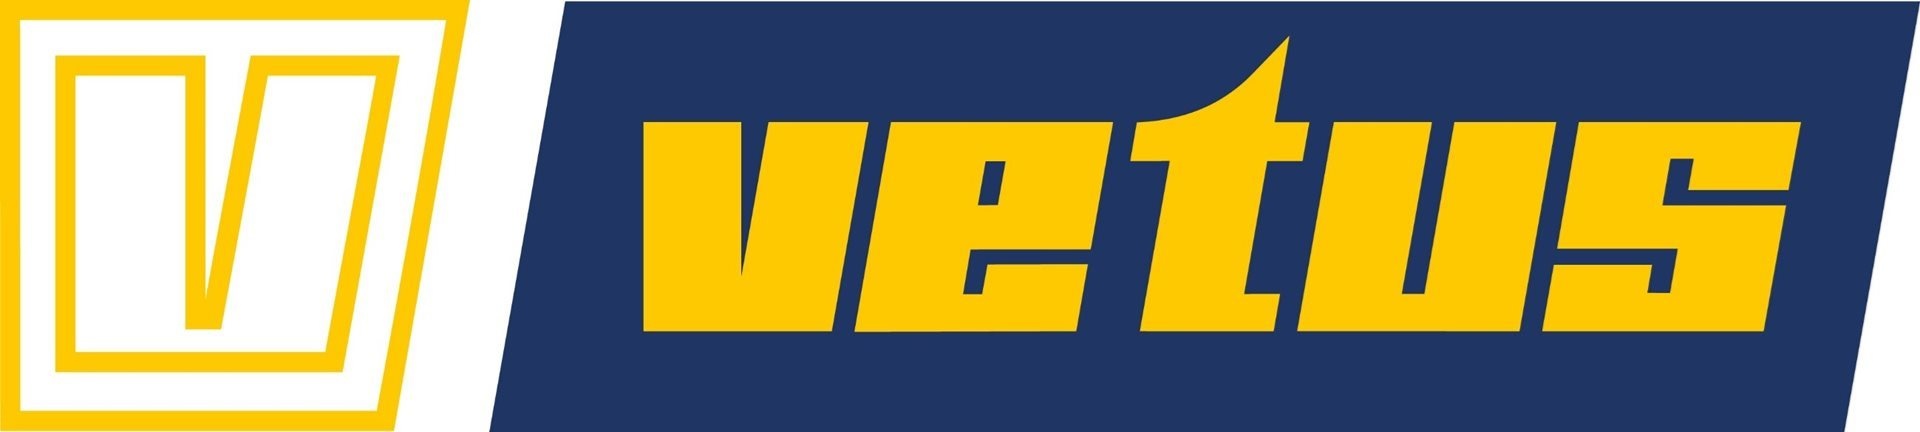 Logo Vetus